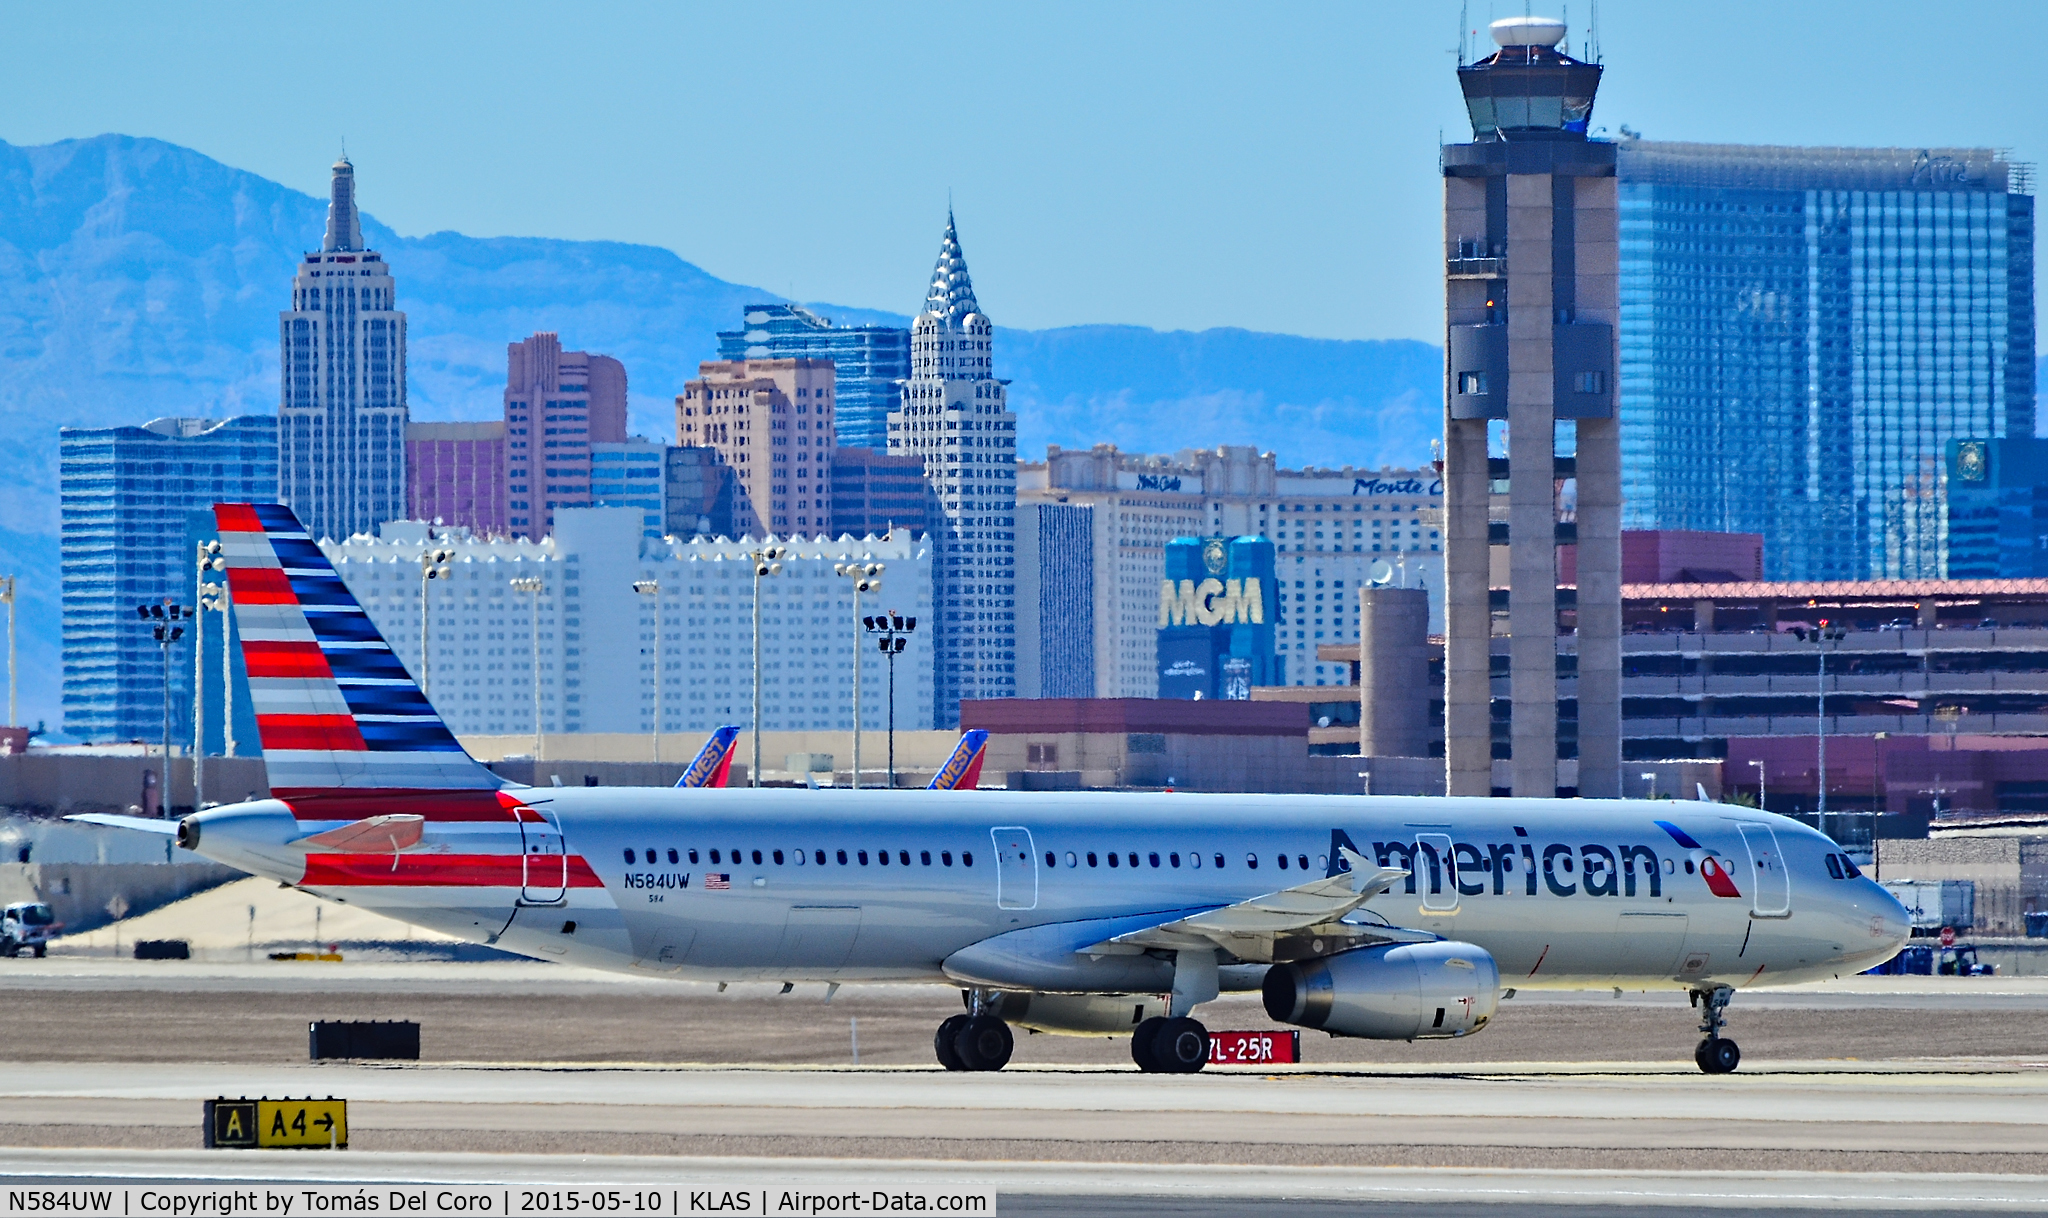 N584UW, 2014 Airbus A321-231 C/N 6194, N584UW American Airlines 2014 Airbus A321-231 - cn 6194 - Las Vegas - McCarran International Airport (LAS / KLAS)
USA - Nevada May 10, 2015
Photo: Tomás Del Coro